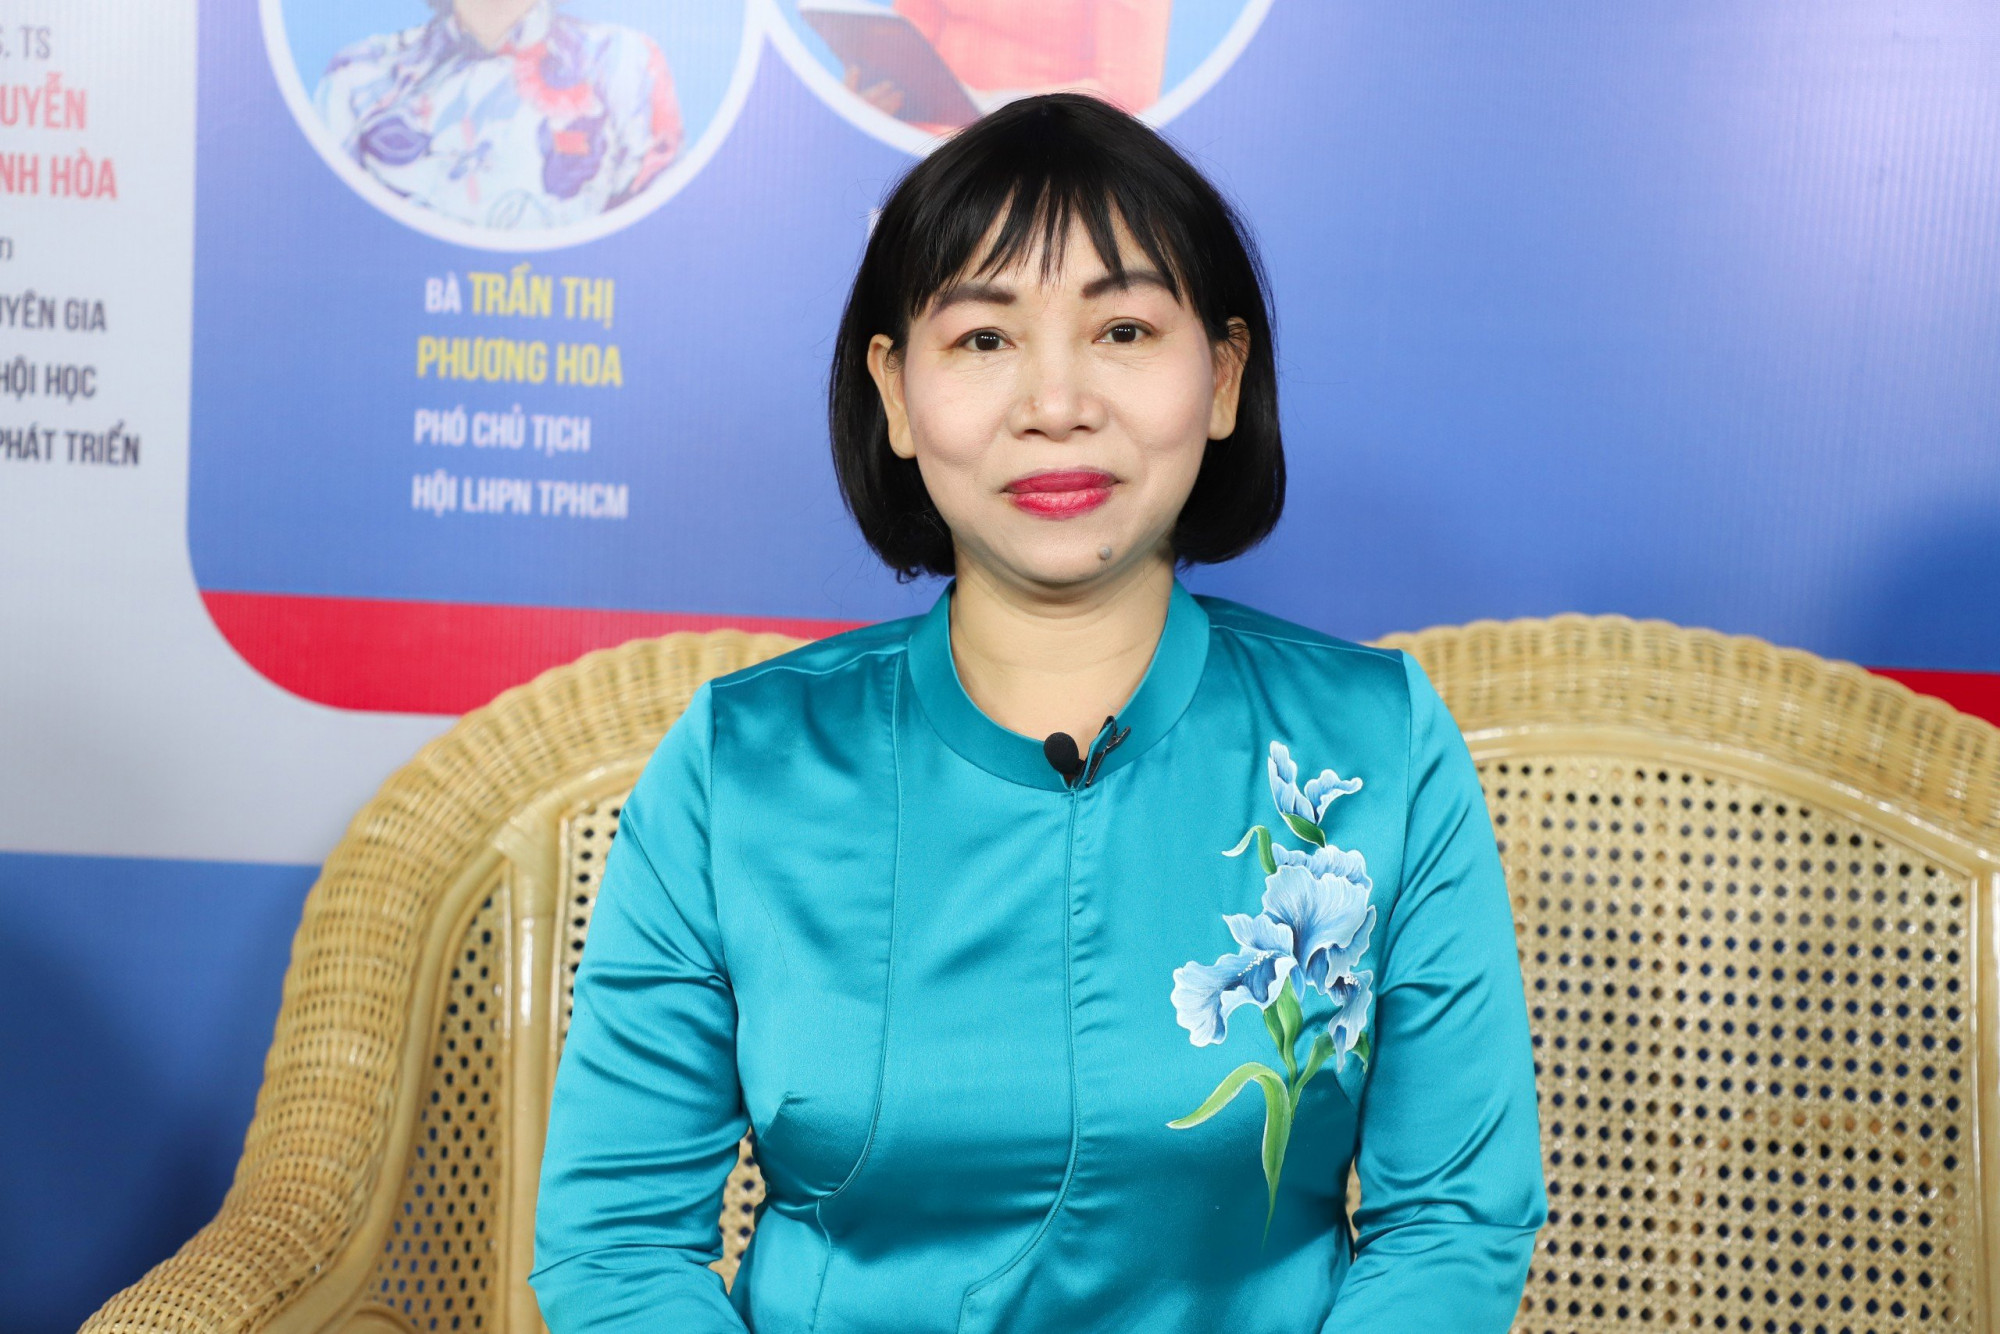 Bà Trần Thị Phương Hoa - Phó Chủ tịch Hội LHPN TPHCM